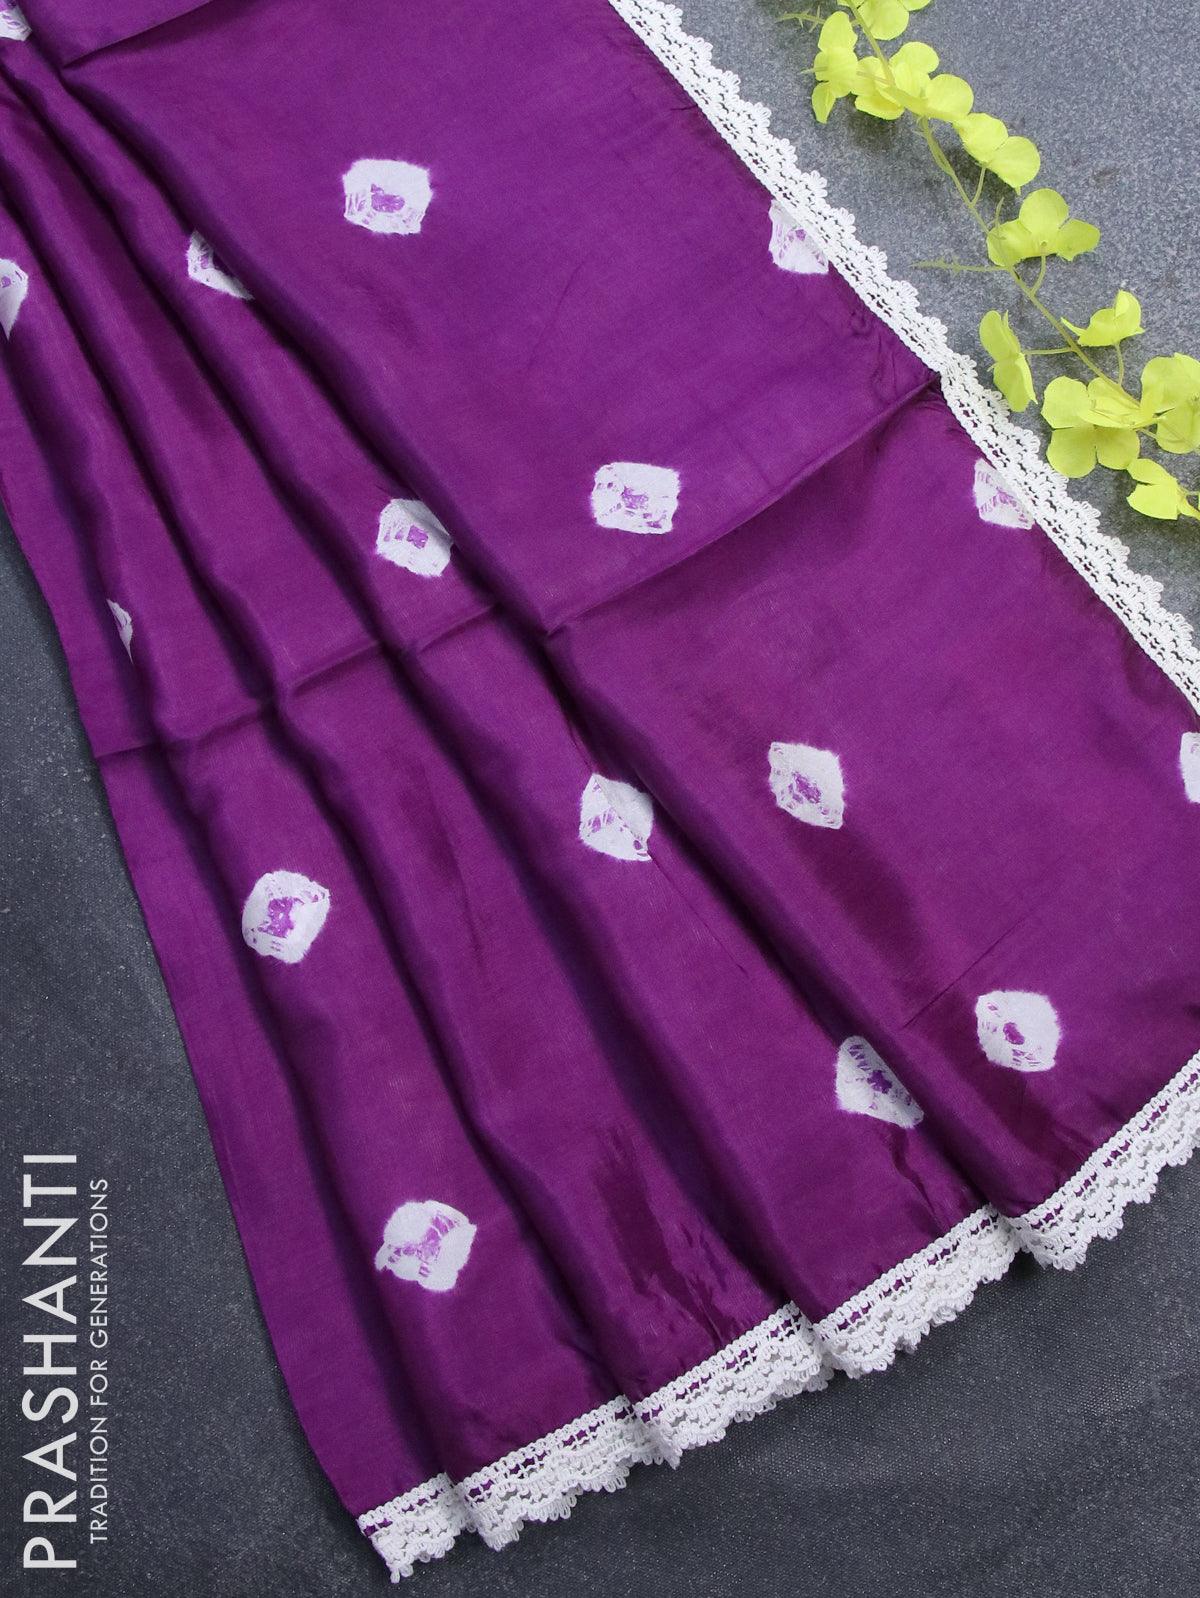 आता घरच्याघरी शिवा जुन्या साडीचा नवा फॅशेनबल ट्रेण्डी लेहेंगा, पाहा व्हिडिओ  -दिसा स्पेशल - Marathi News | How to make old saree to dress : Convert Old  Saree to Dress or Lehenga